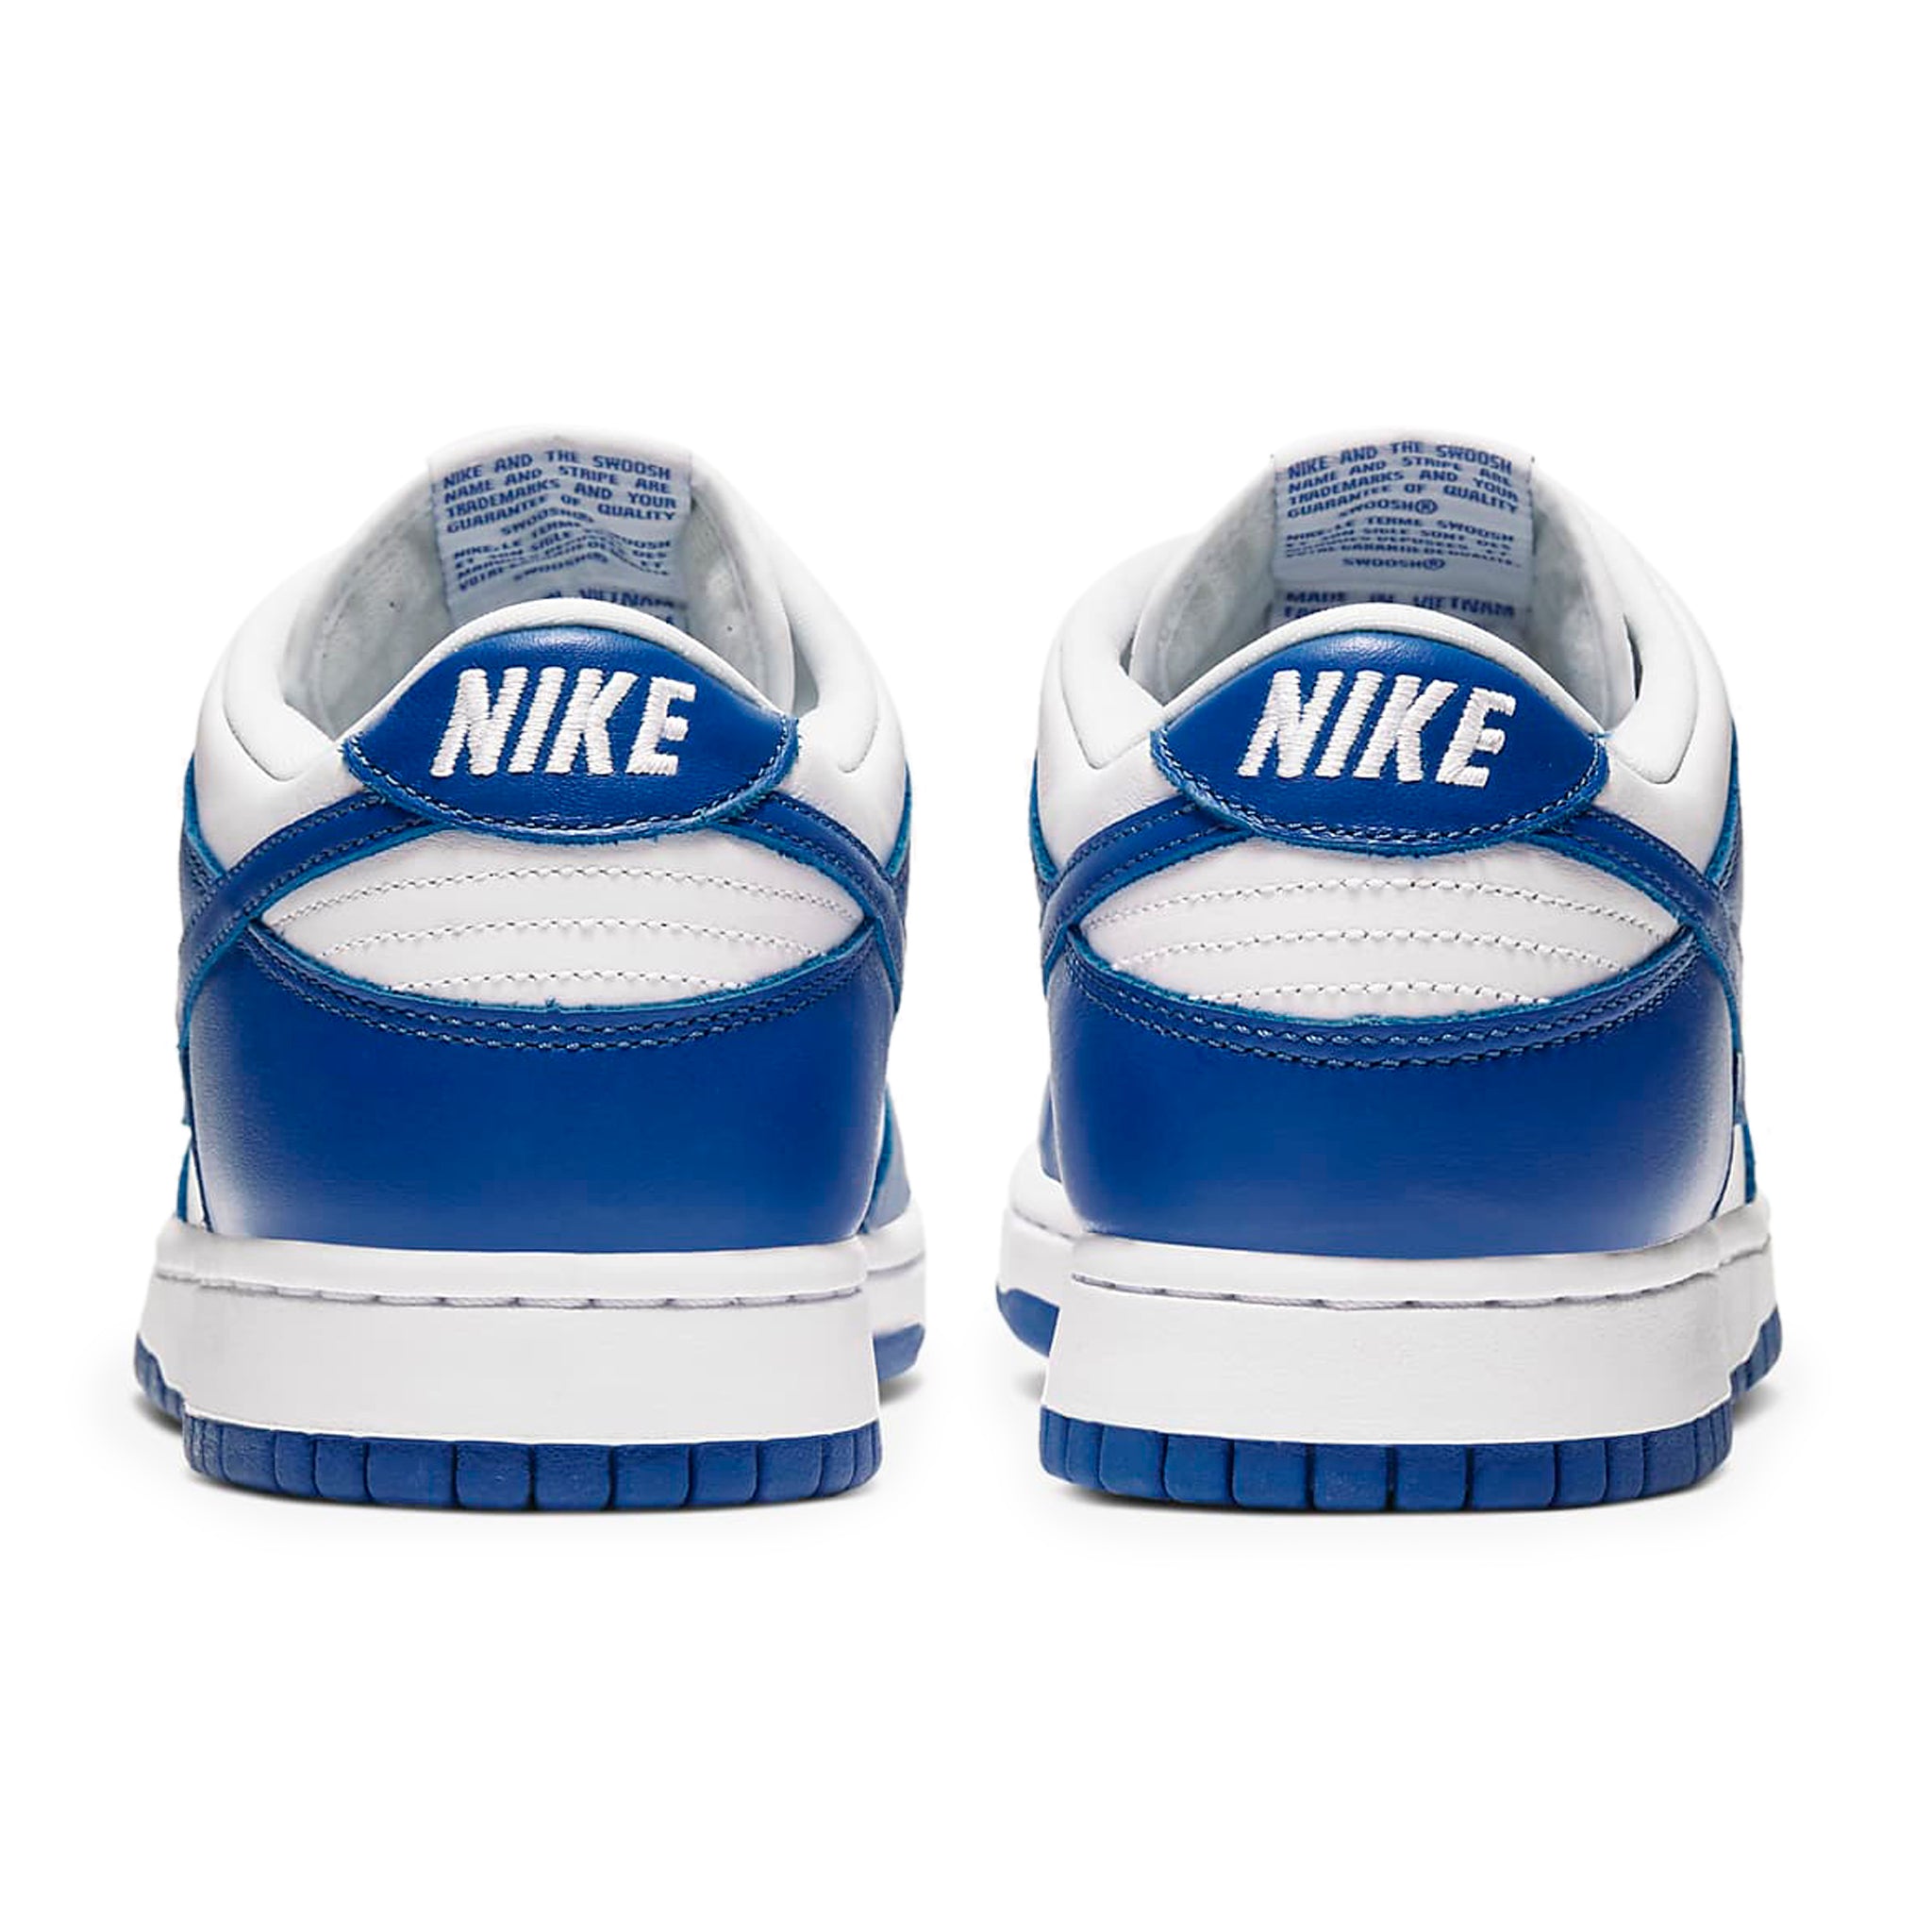 Heel view of Nike Dunk Low Kentucky (2020) CU1726-100